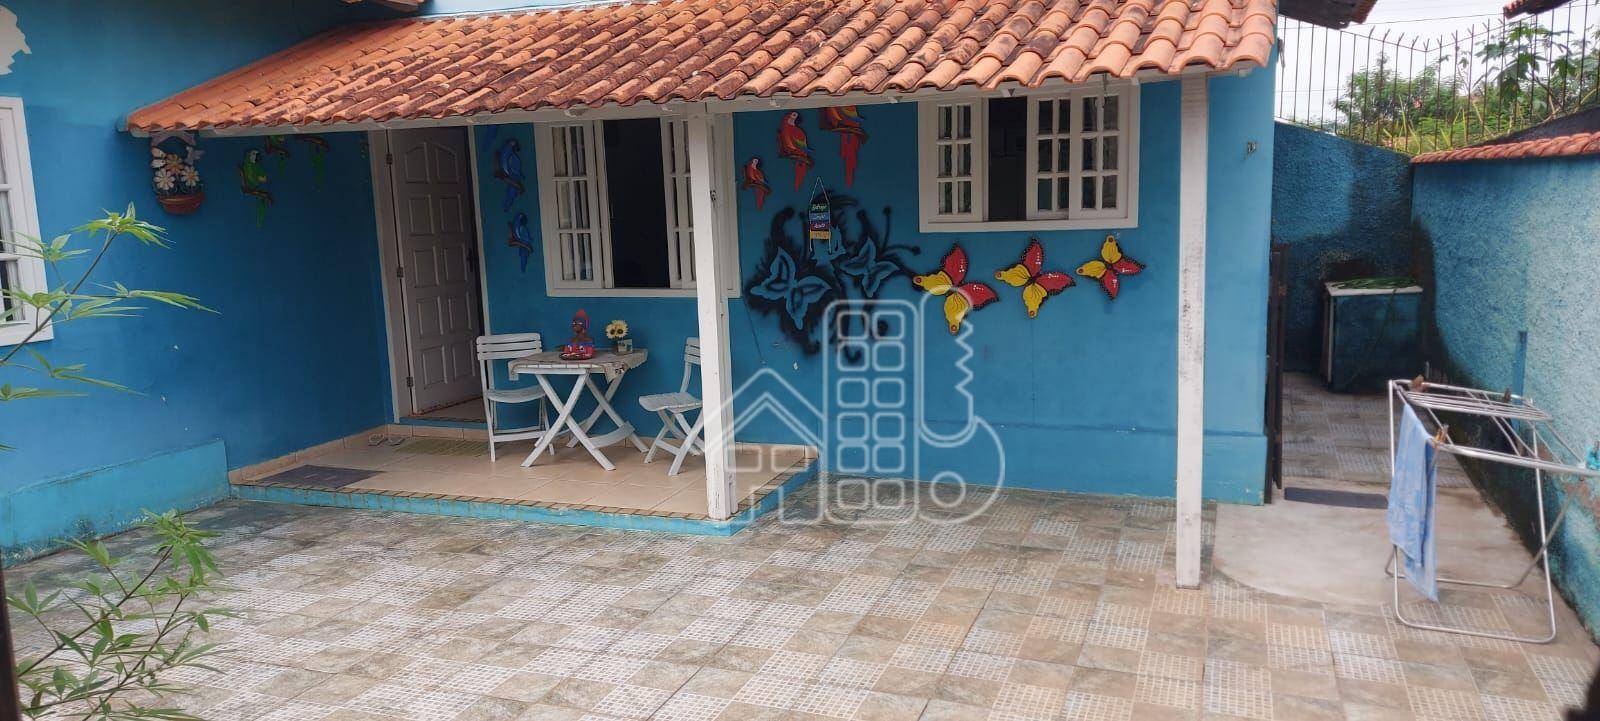 Casa com 2 dormitórios à venda, 70 m² por R$ 350.000,00 - Rincão Mimoso (Itaipuaçu) - Maricá/RJ